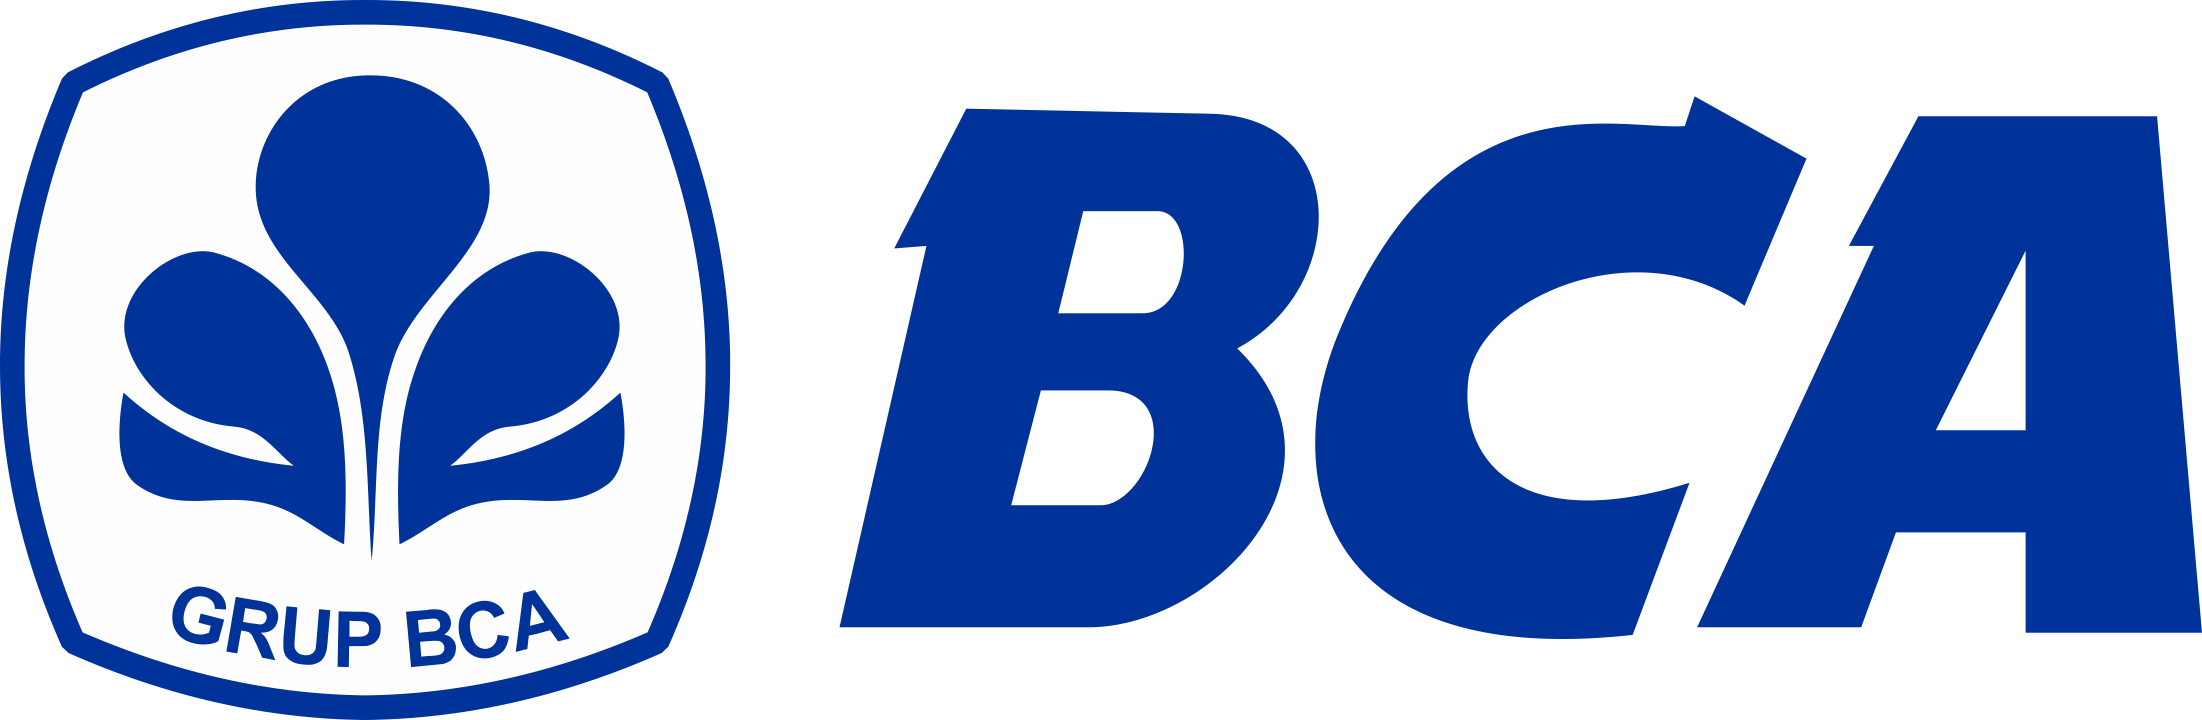 Bank-BCA-Logo-PNG-720p-FileVector69.png